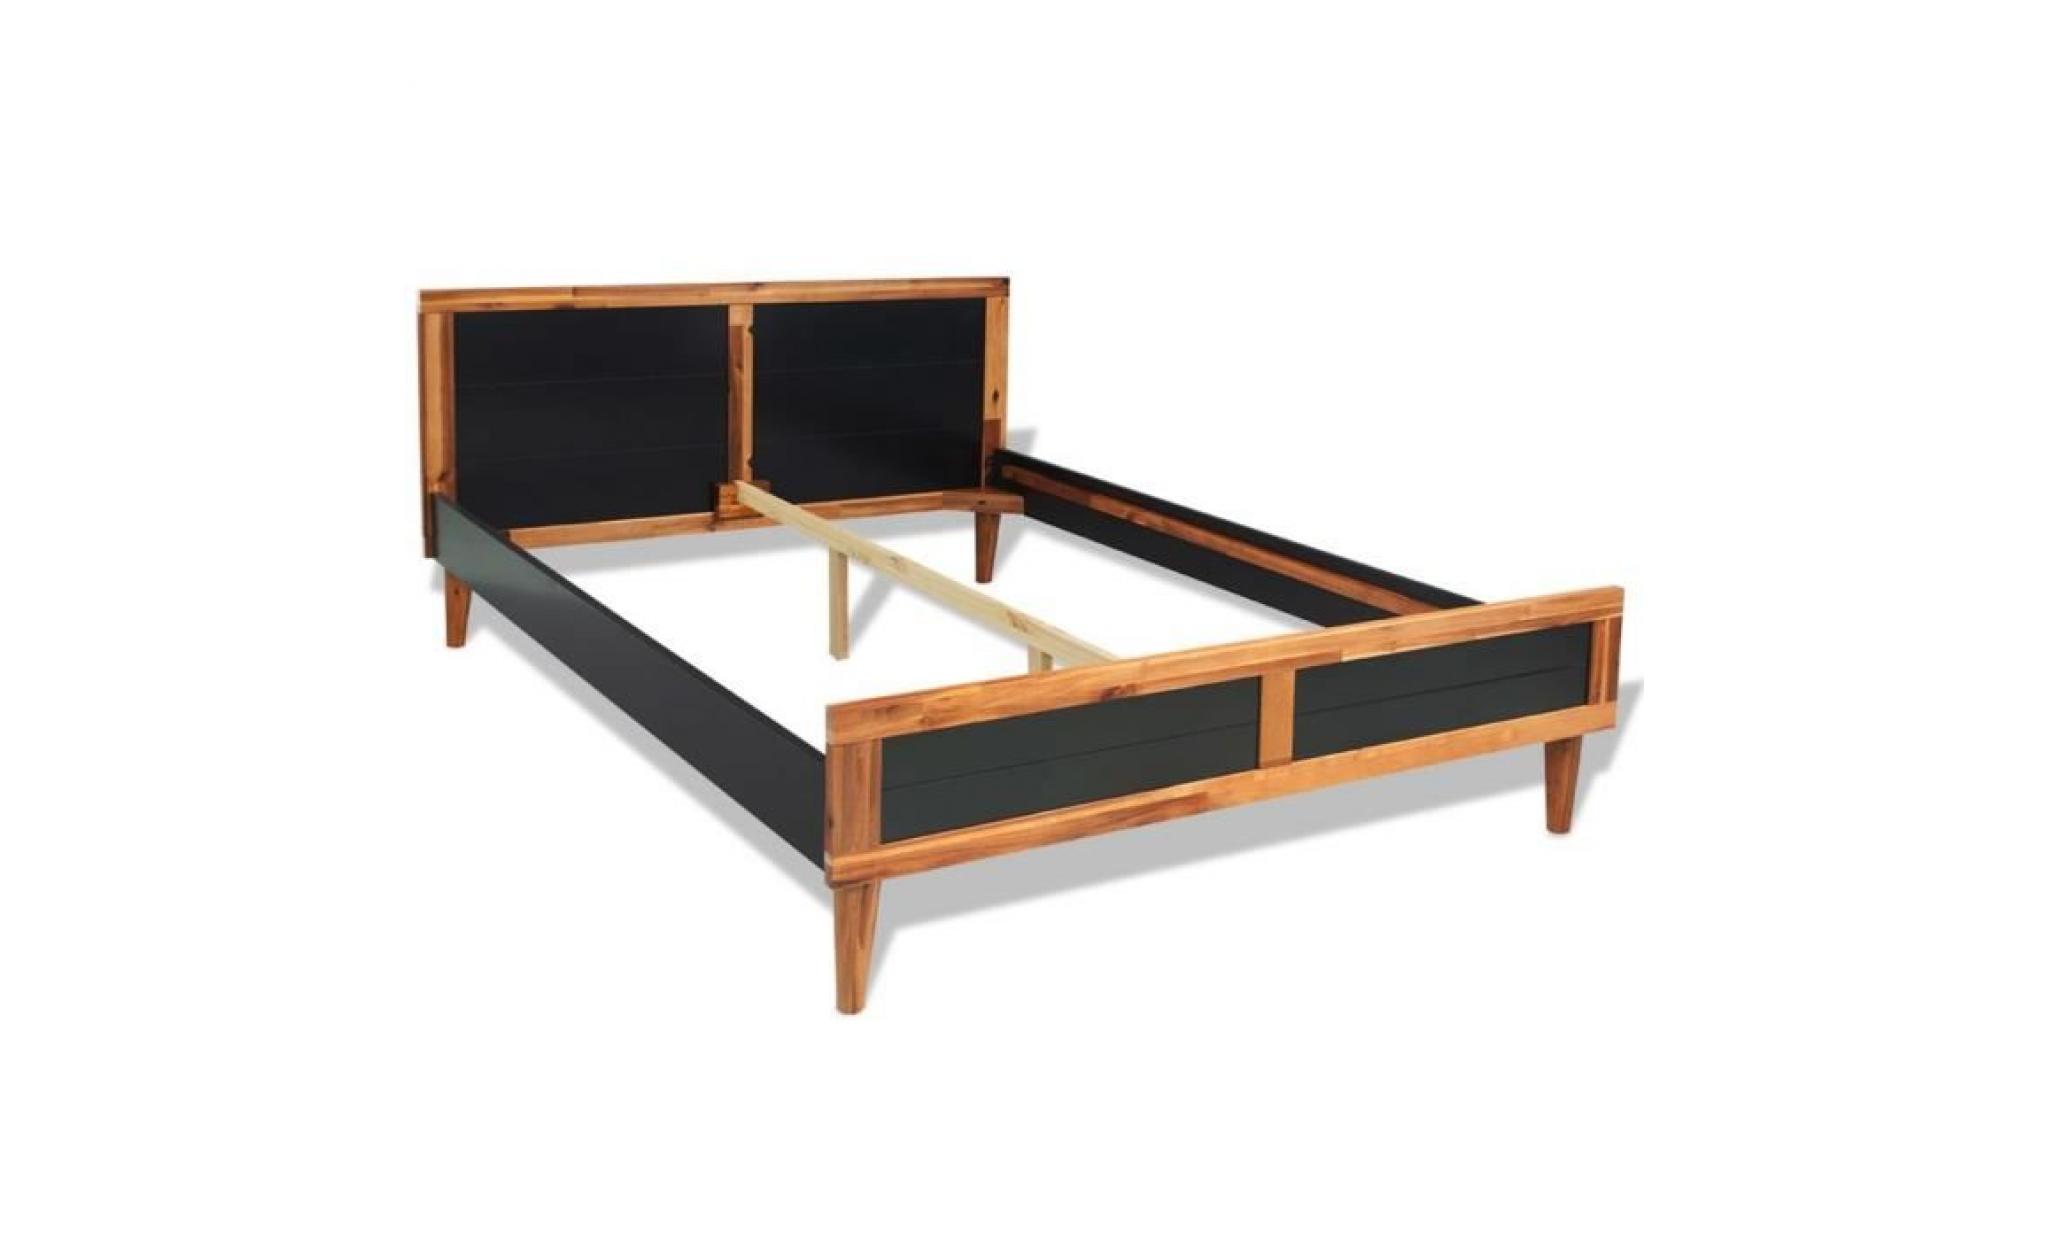 cadre de lit adulte contemporain enfant scandinave chambre dormir confortbois d'acacia massif 205 x 187 x 80 cmnoir